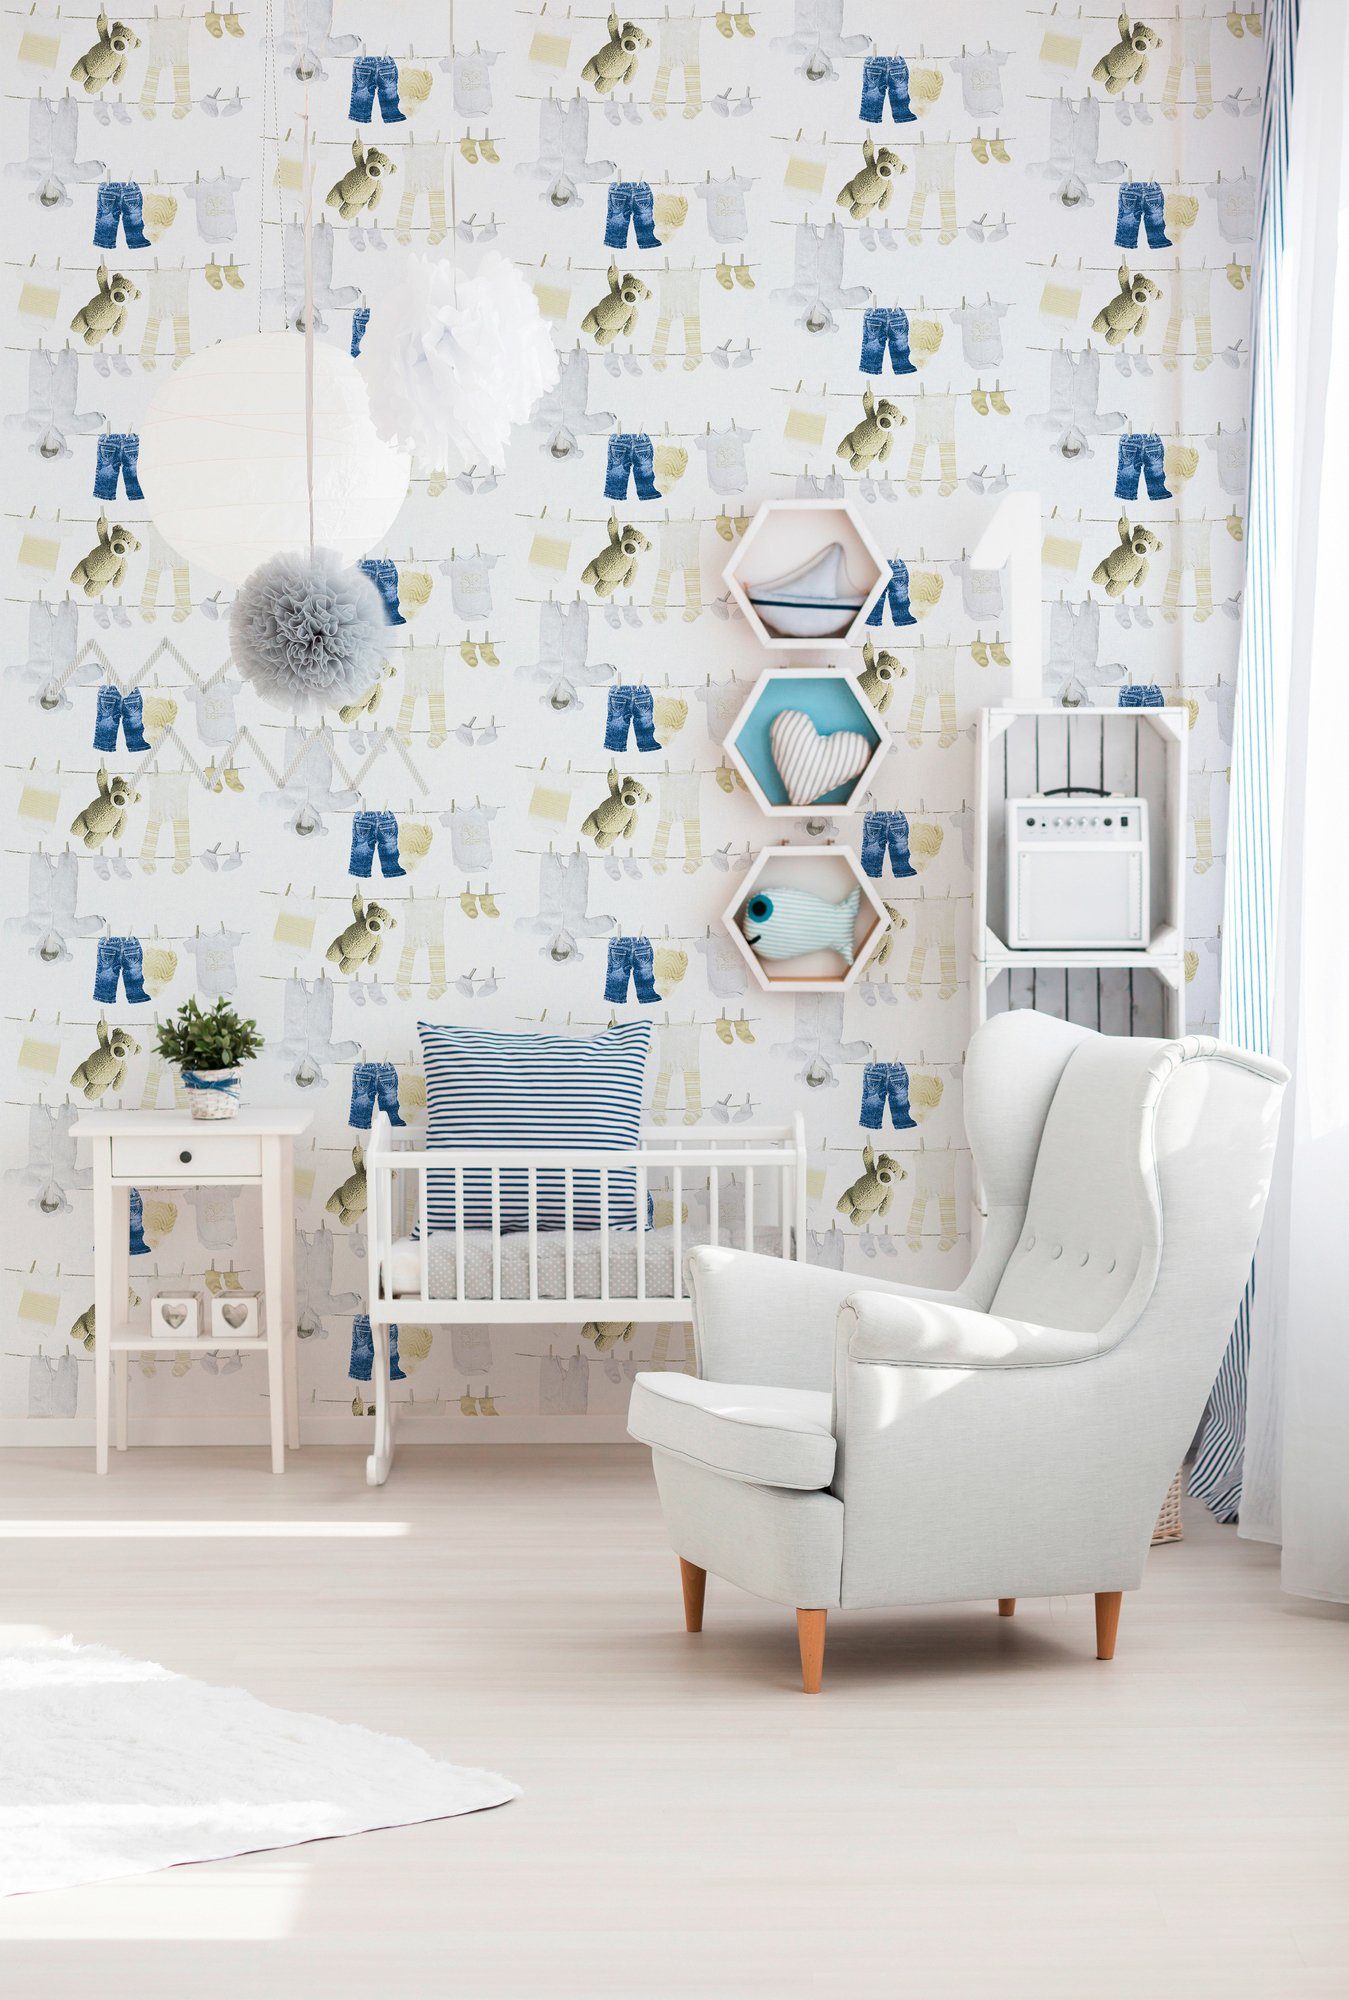 Kinderzimmer Création Stars, blau/natur/weiß walls glatt, Little living A.S. Vliestapete Tapete